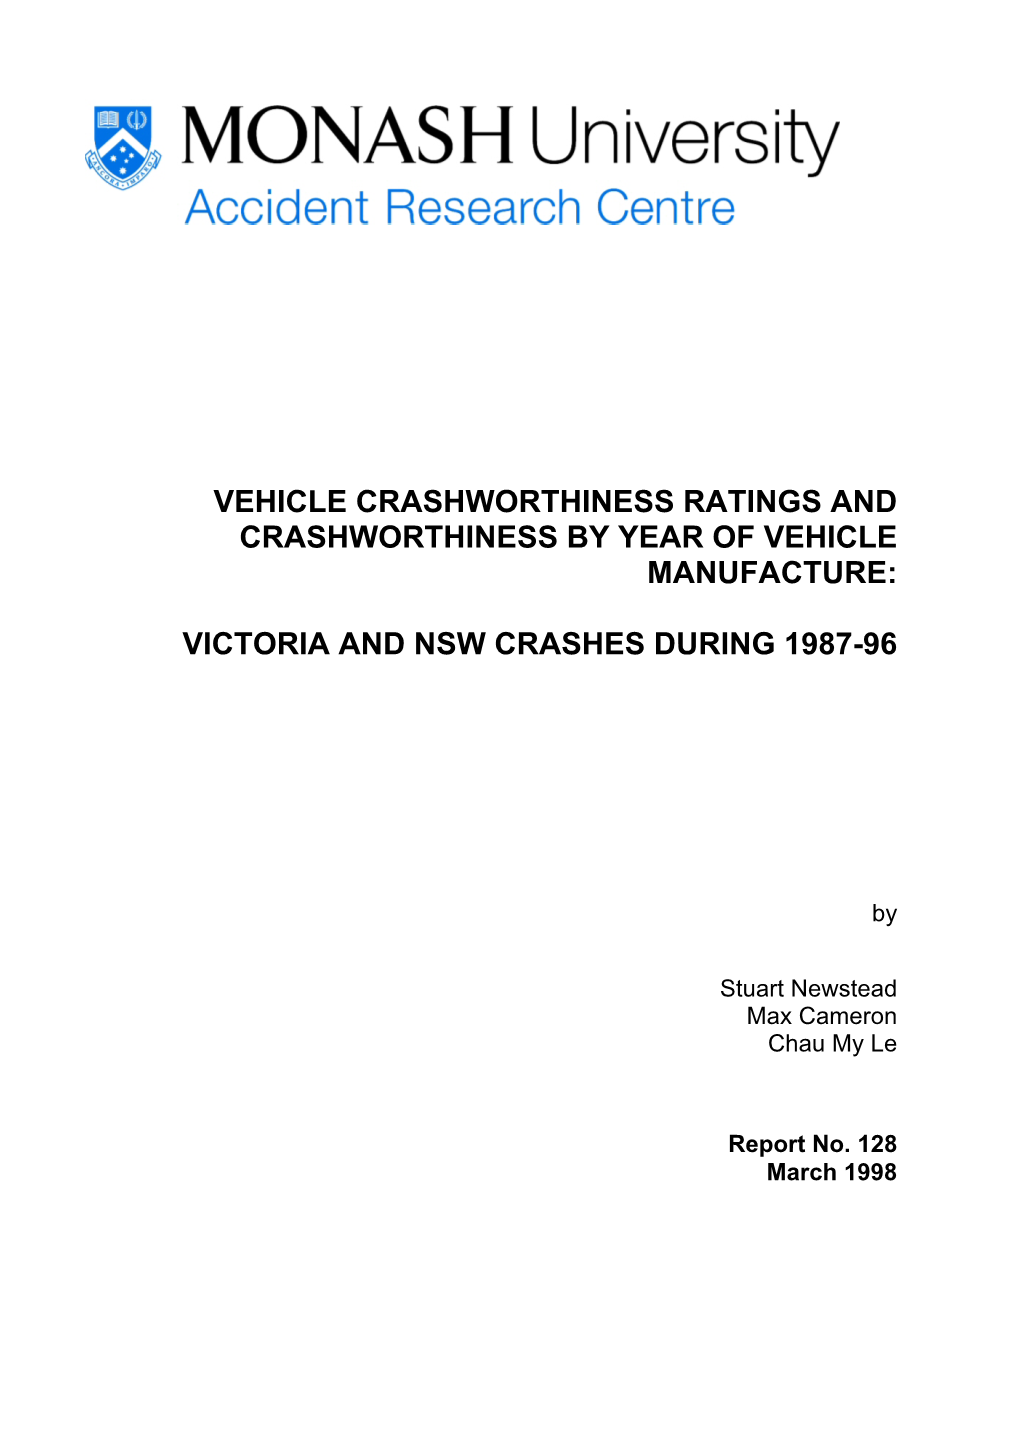 Vehicle Crashworthiness Ratings